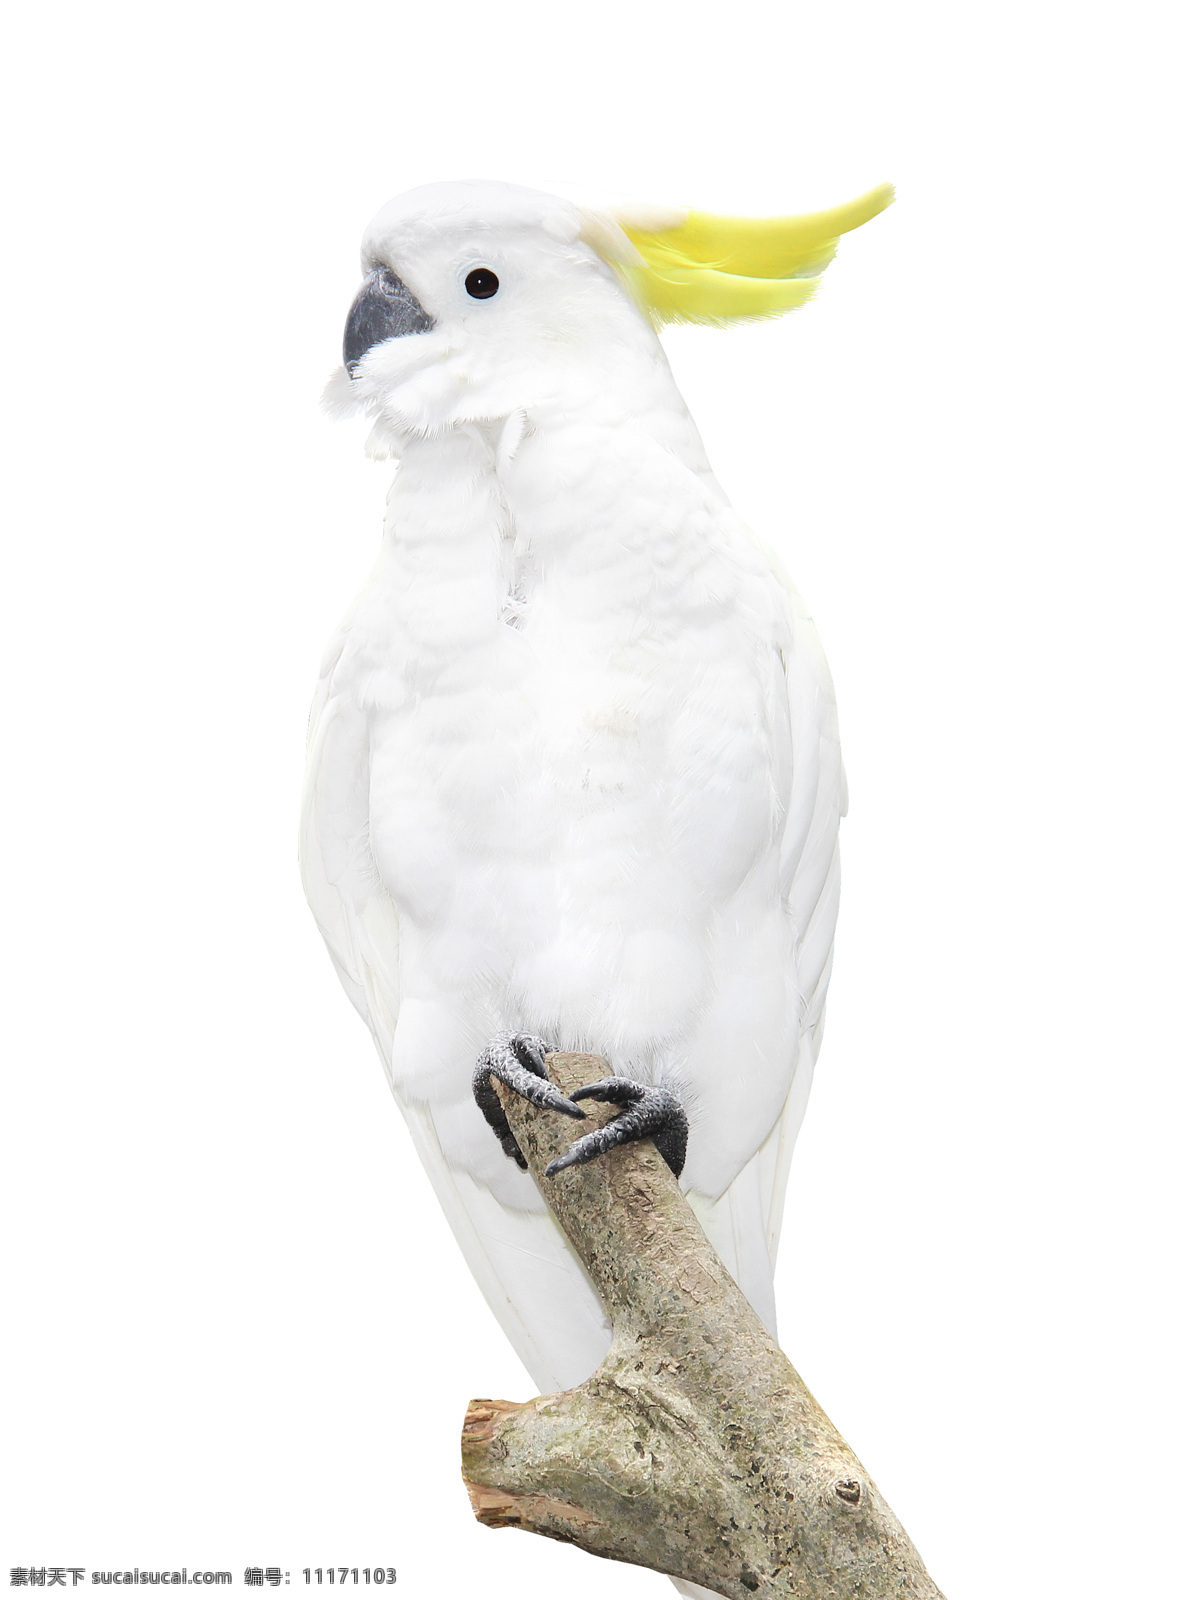 鹦鹉图片 鹦鹉 白色鹦鹉 七彩鹦鹉 巴哥 美丽鹦鹉 鹦鹉素材 鸟类 特写 生物世界